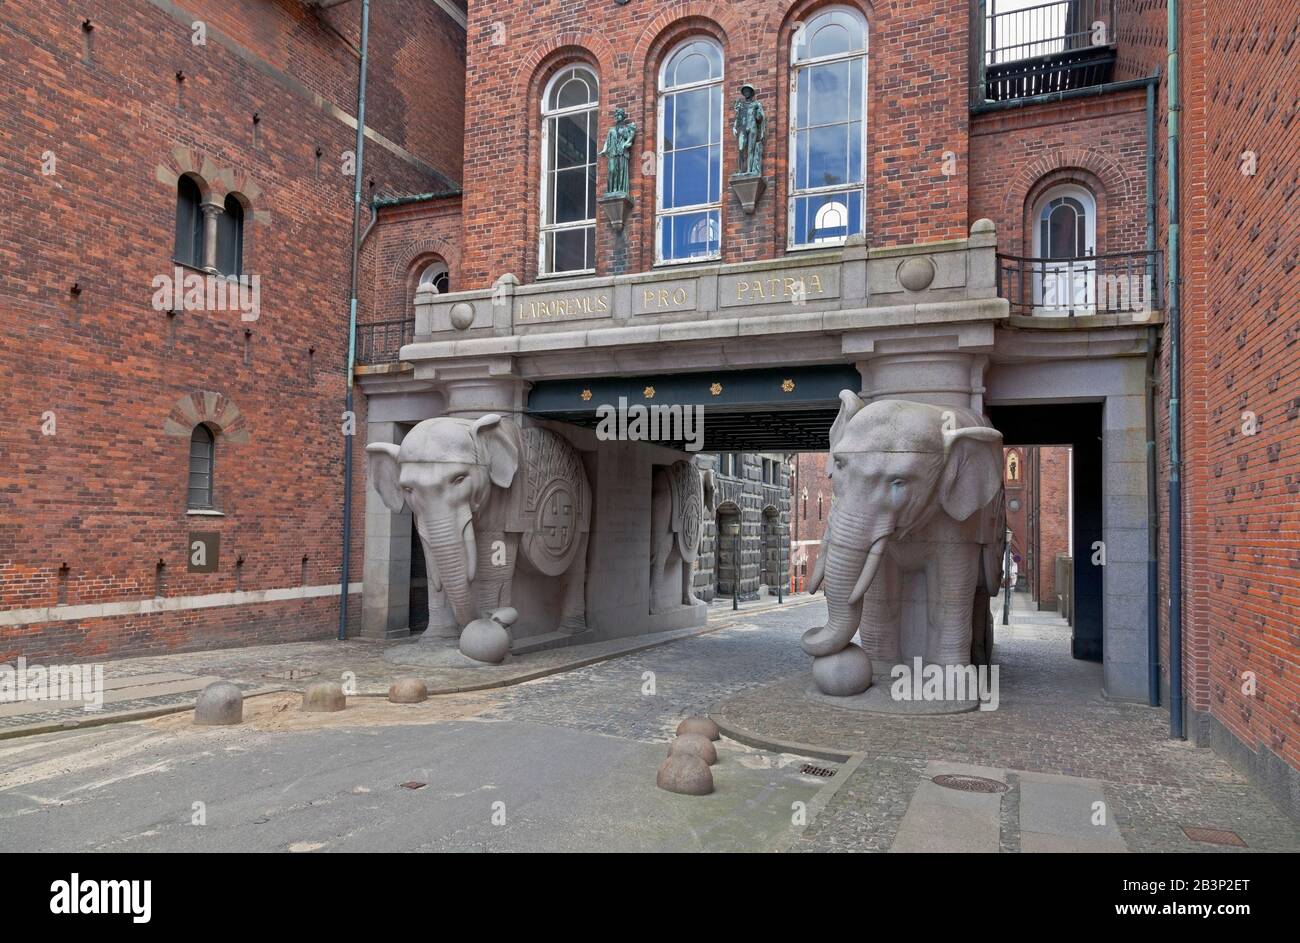 Elefantporten, la porta degli Elefanti, l'entrata storica dal lato Valby alla vecchia zona della birreria Carlsberg a Copenhagen, Danimarca. Foto Stock